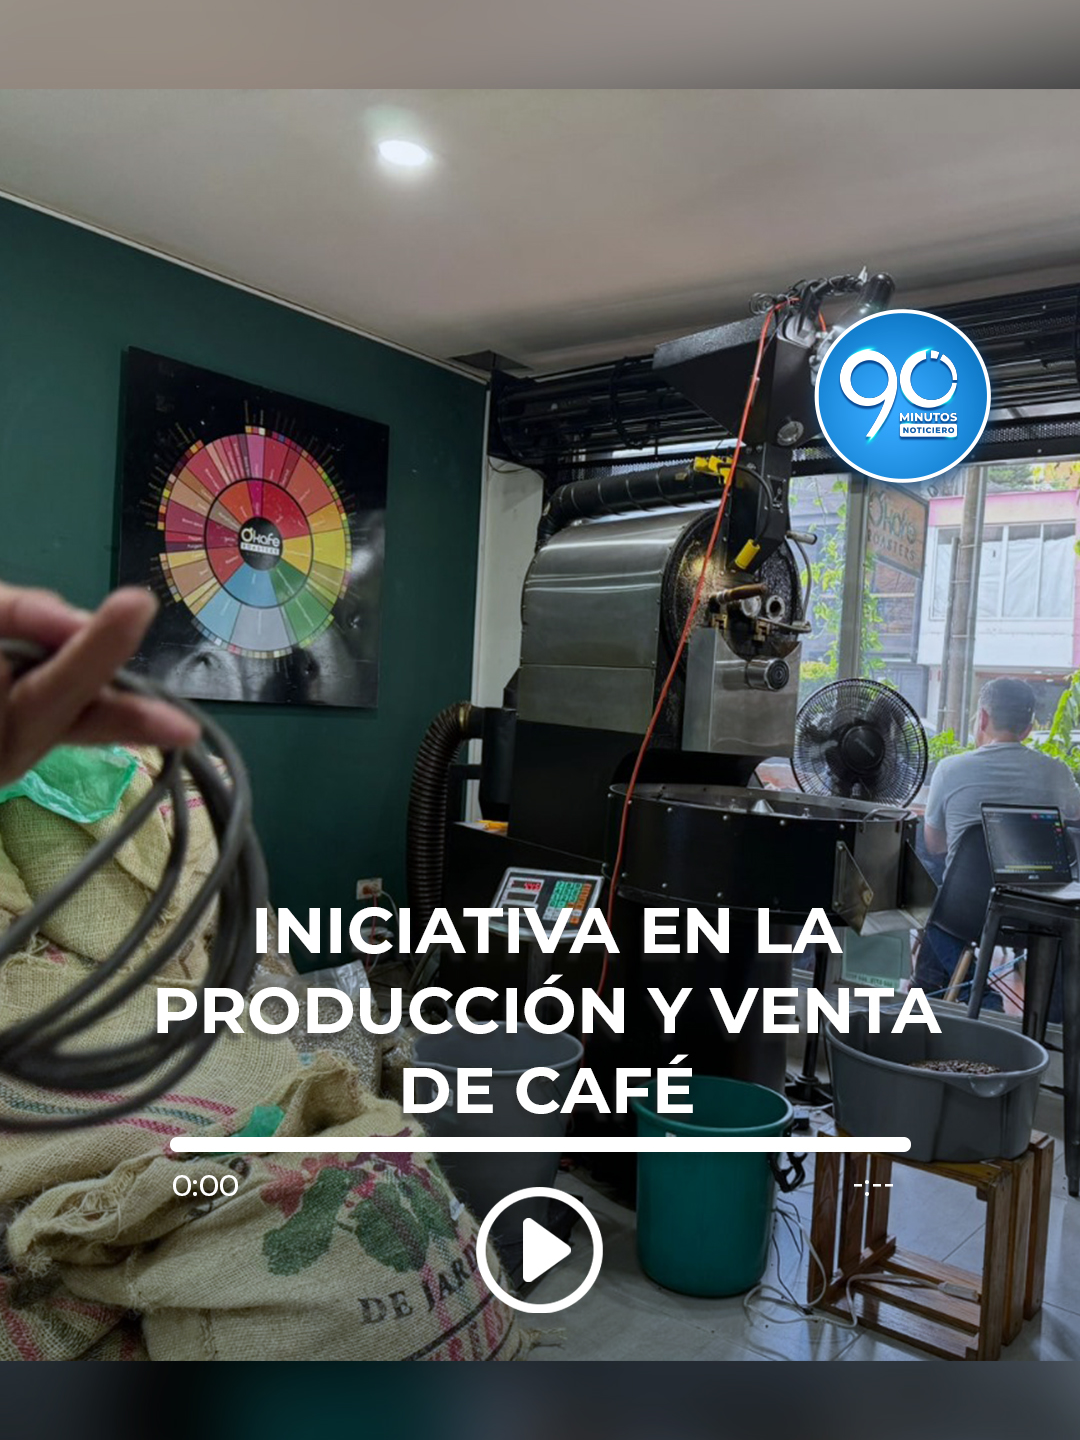 Iniciativa en la producción y venta de café, con mas de 20 referencias.  #cafe #emprendimiento #produccion